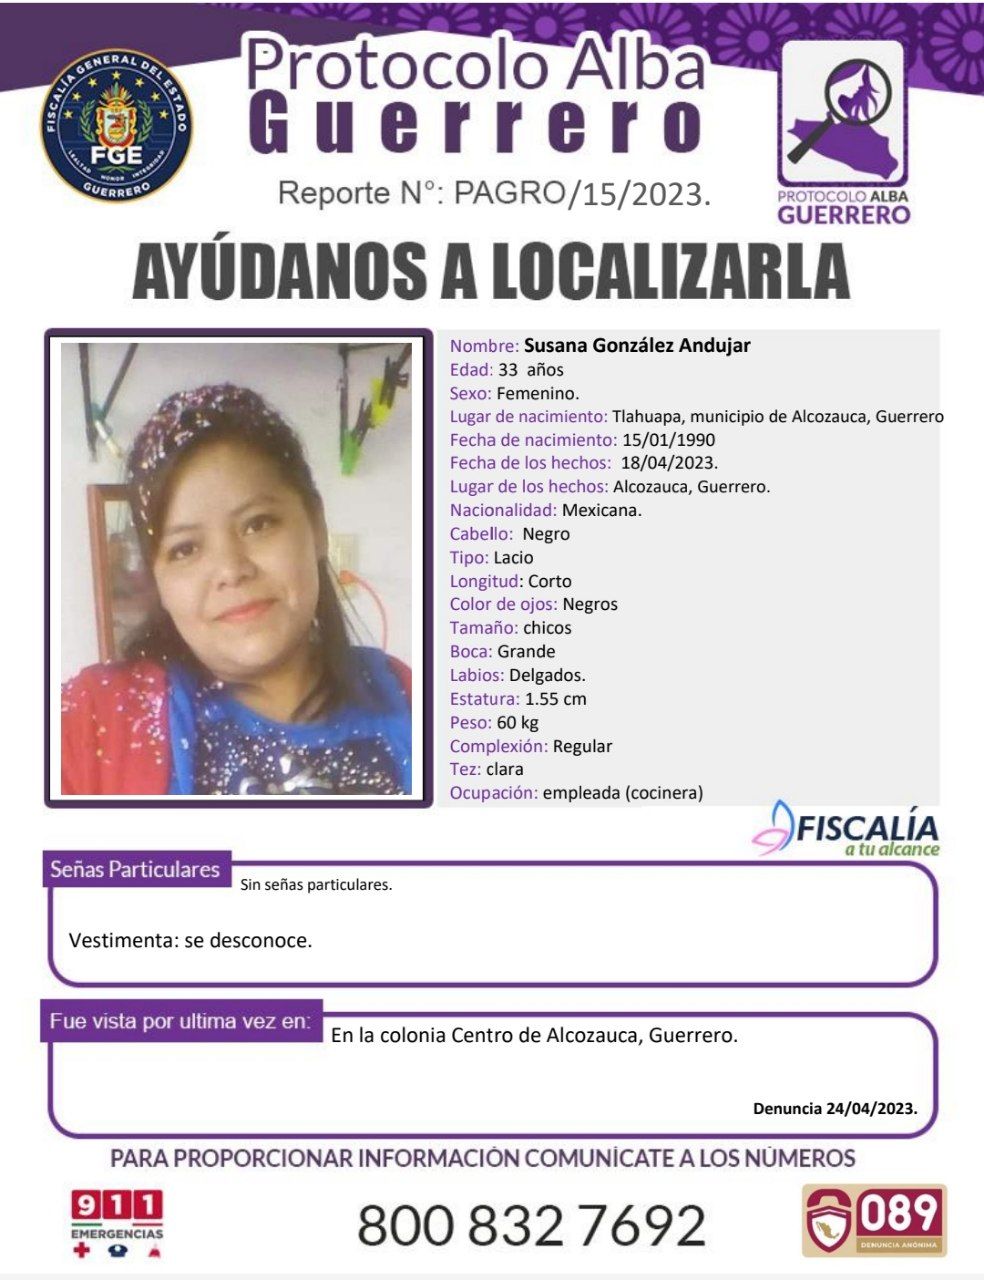 Fiscalía General Del Estado Solicita Su Colaboración Para Localizar A Susana González Andujar.